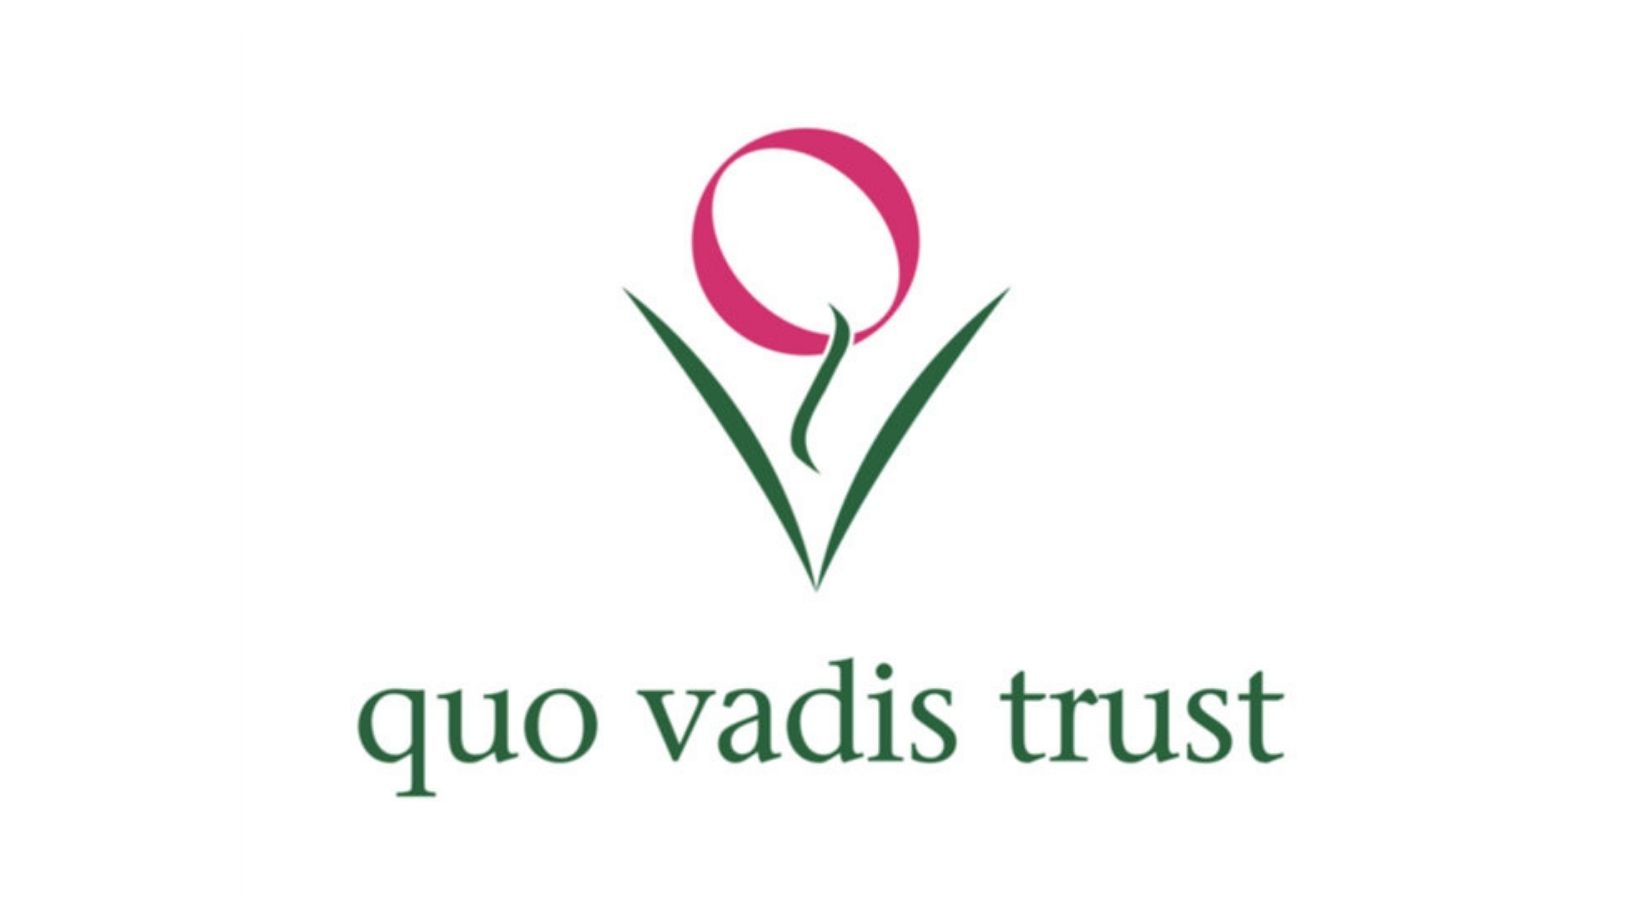 quo vadis trust logo